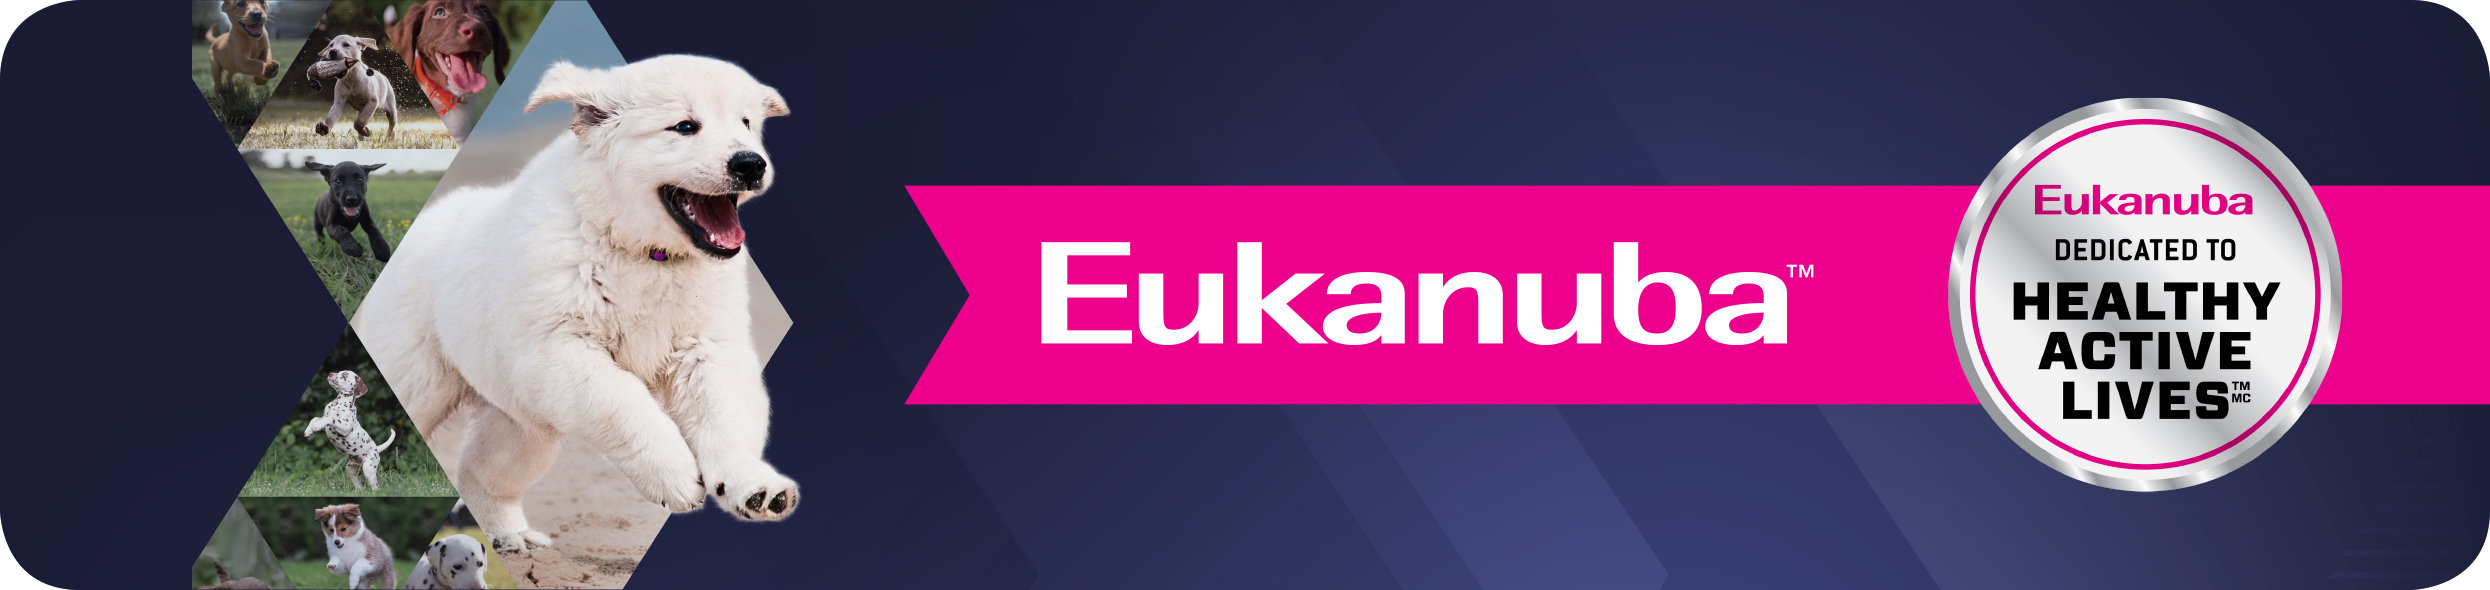 Eukanuba Banner